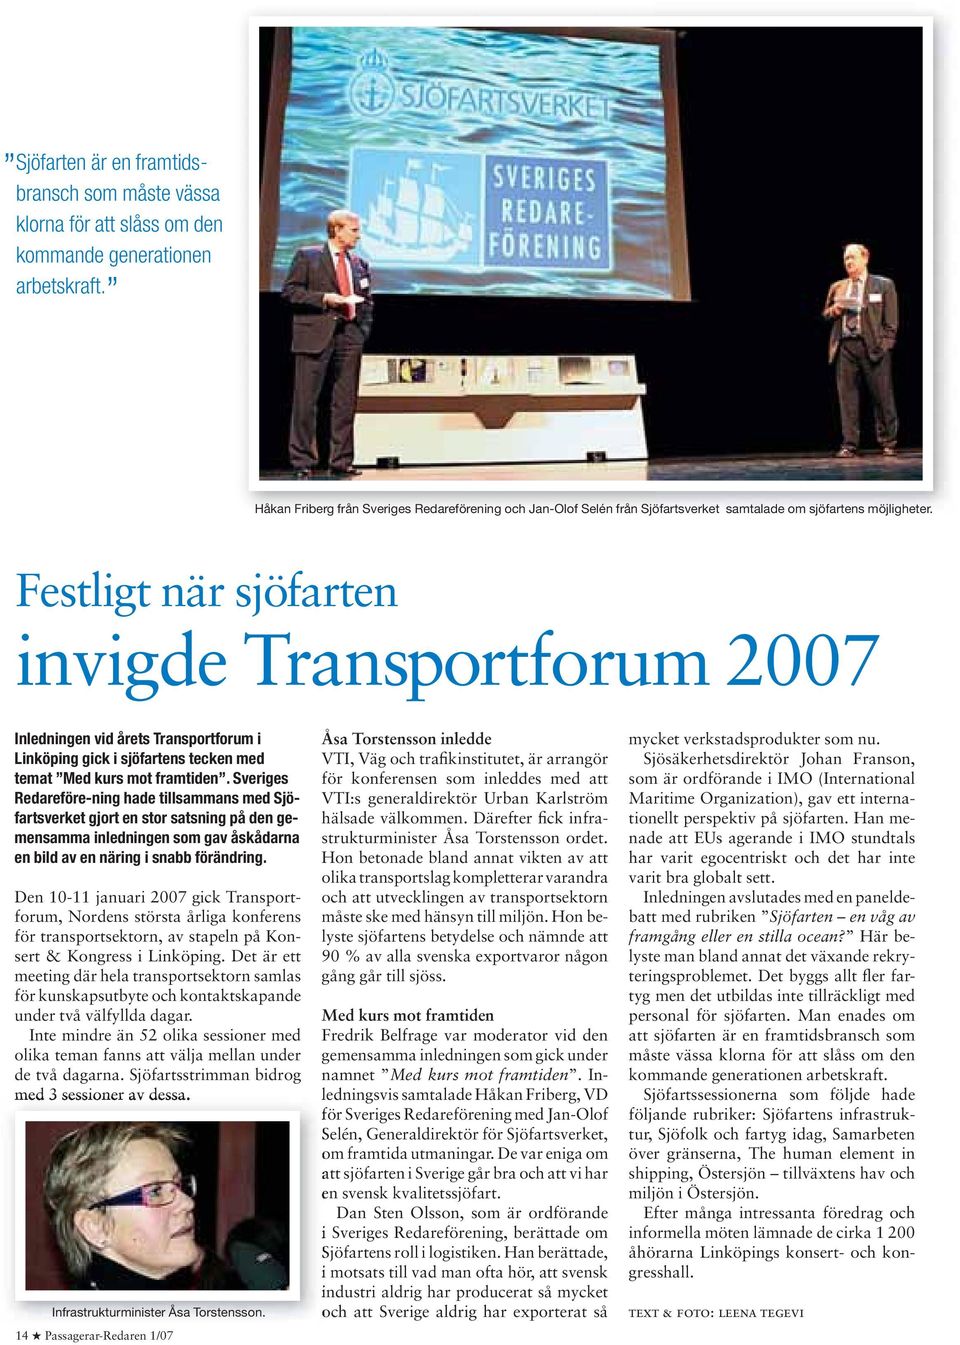 Festligt när sjöfarten invigde Transportforum 2007 Inledningen vid årets Transportforum i Linköping gick i sjöfartens tecken med temat Med kurs mot framtiden.